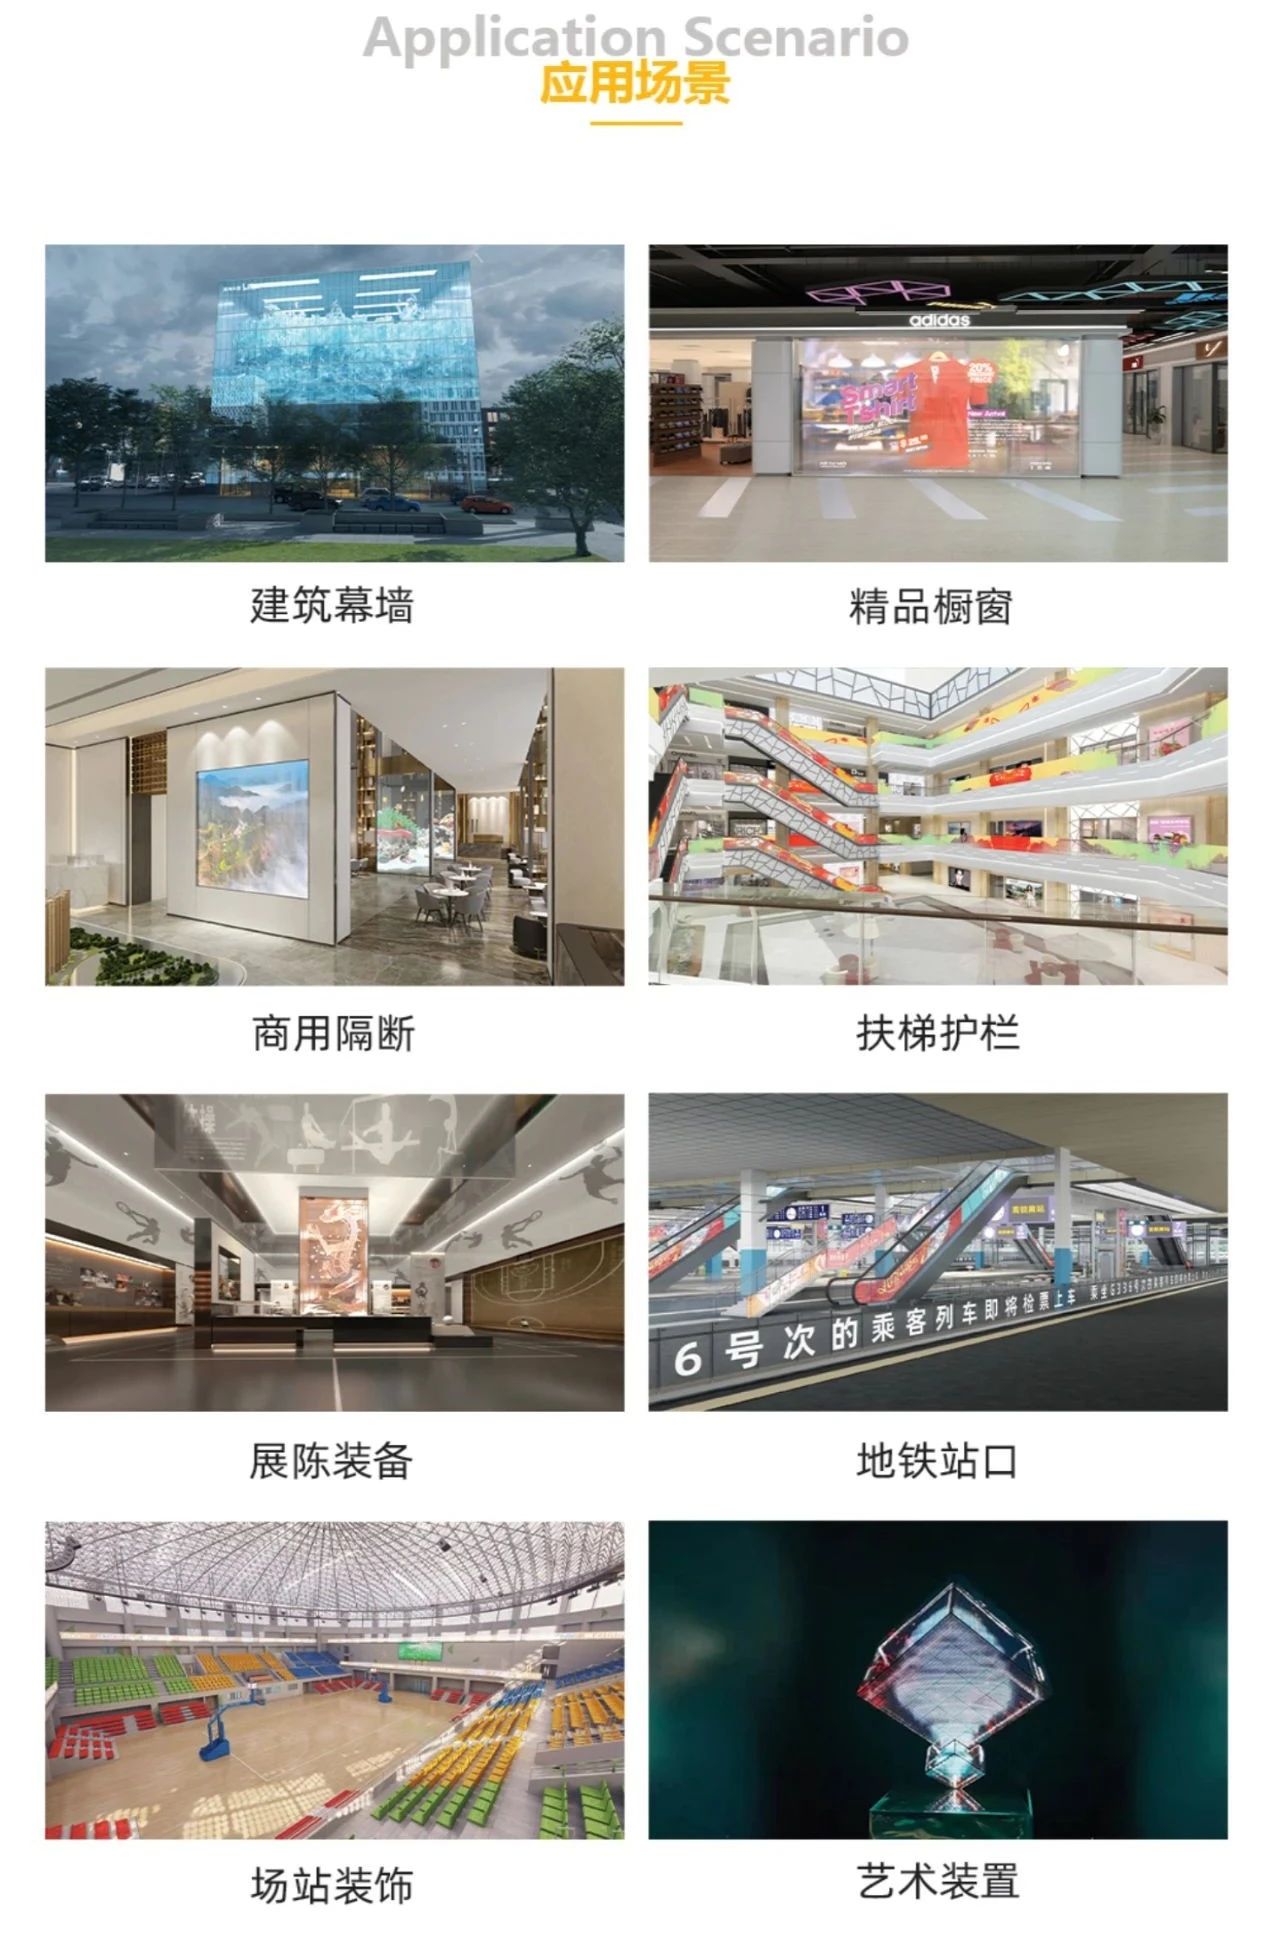 第二十七屆中國(浙江)照明產業供應鏈配套會暨第八屆LED照明創新論壇圓滿閉幕